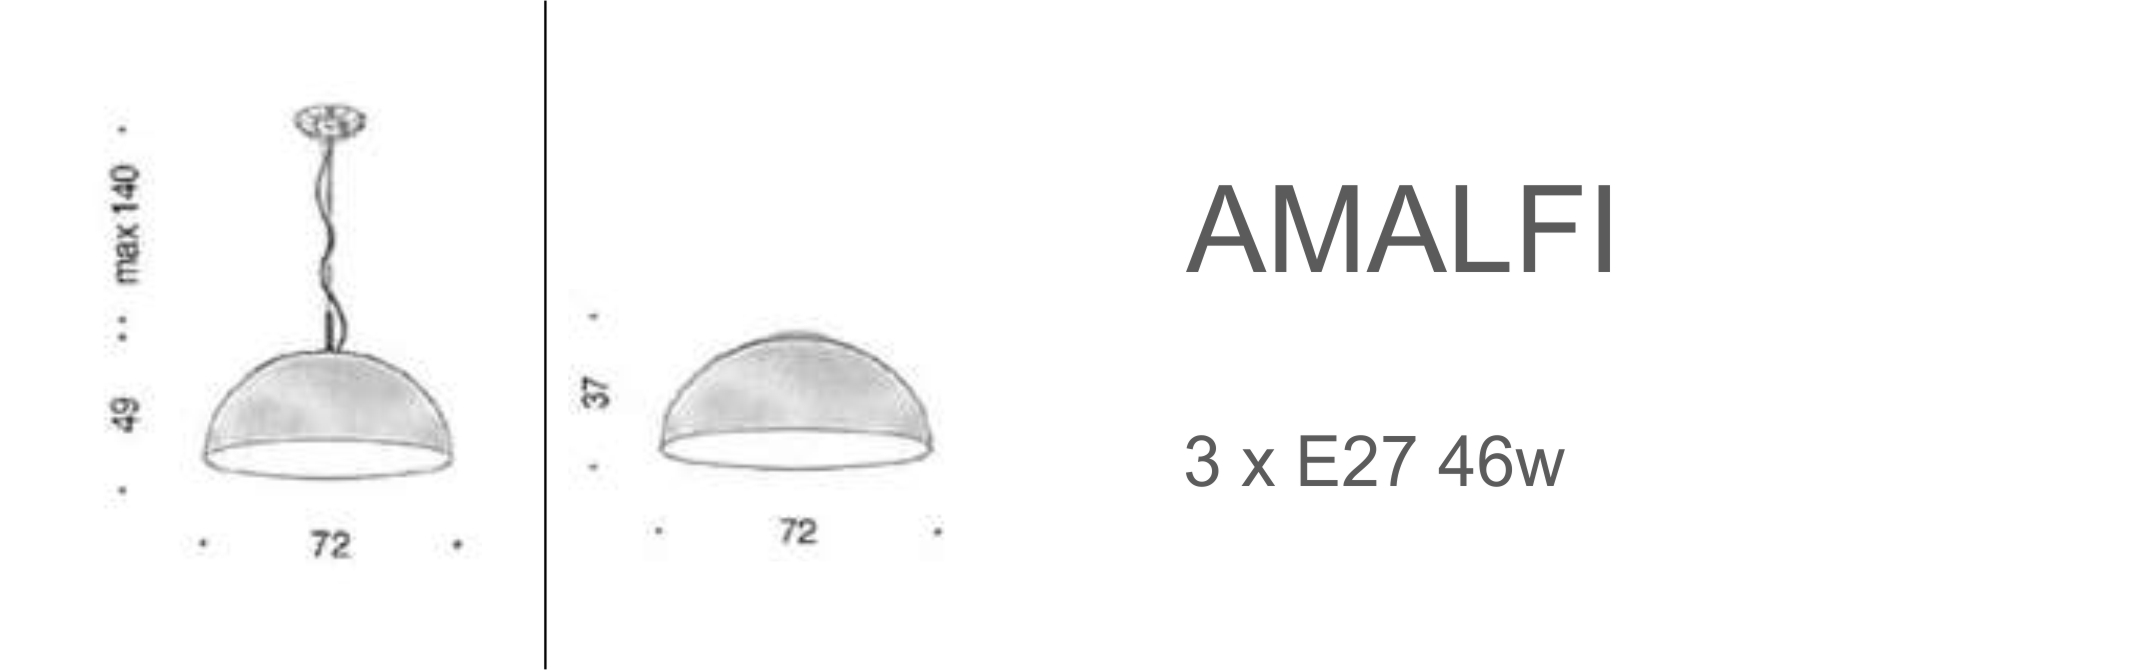 Amalfi - D72 (E27)